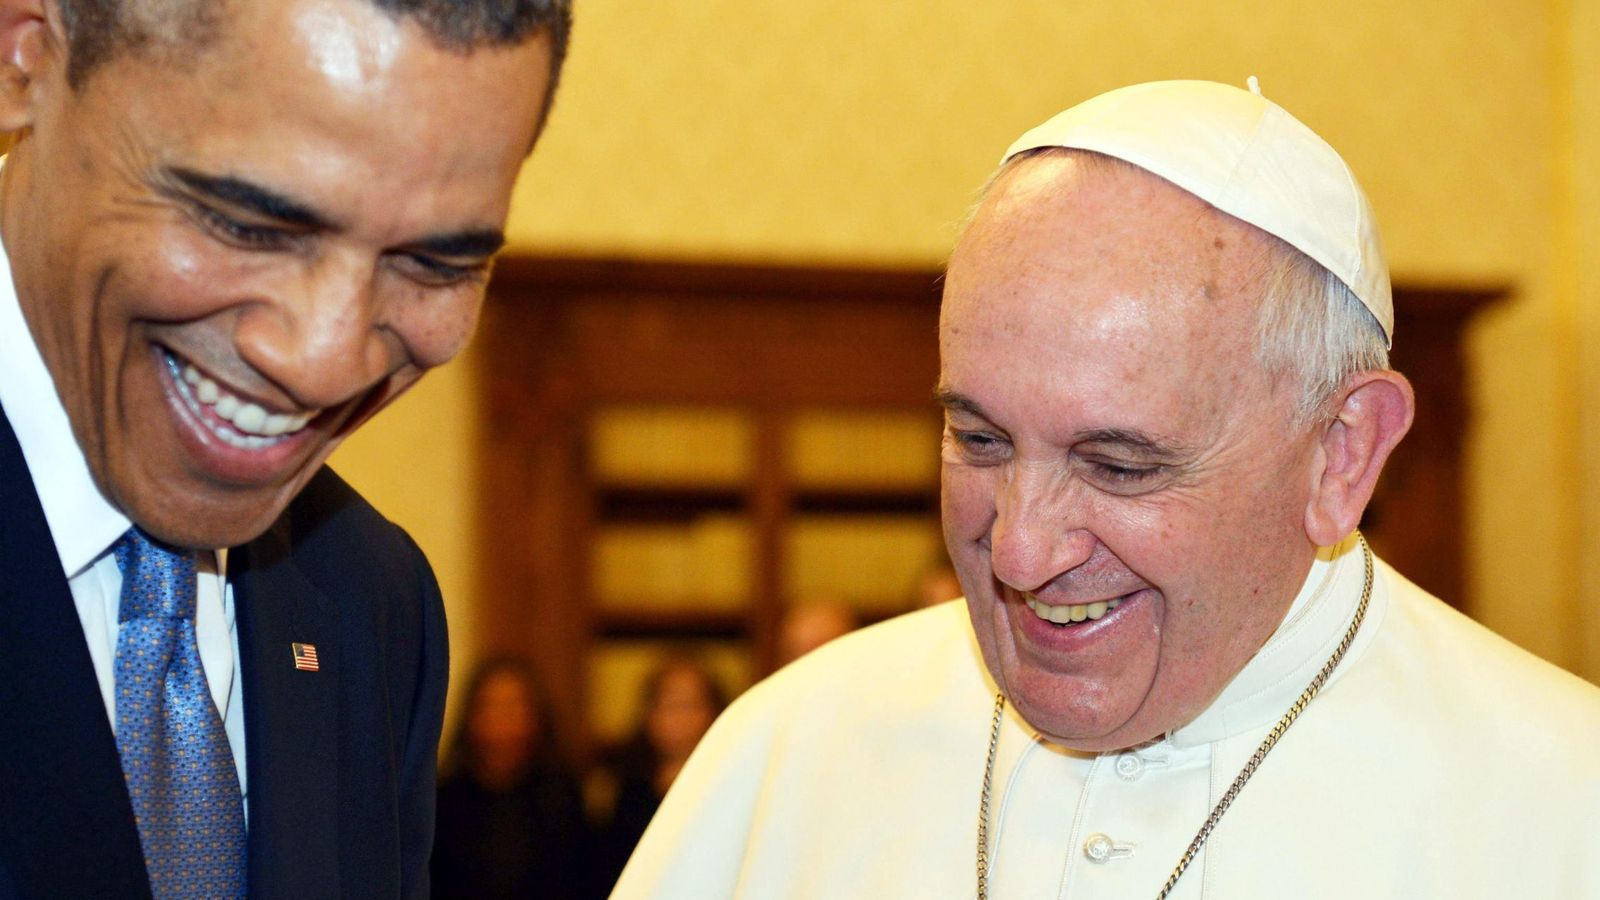 Foto: El presidente estadounidense, Barack Obama, y el Papa Francisco en marzo de 2014. (Efe)